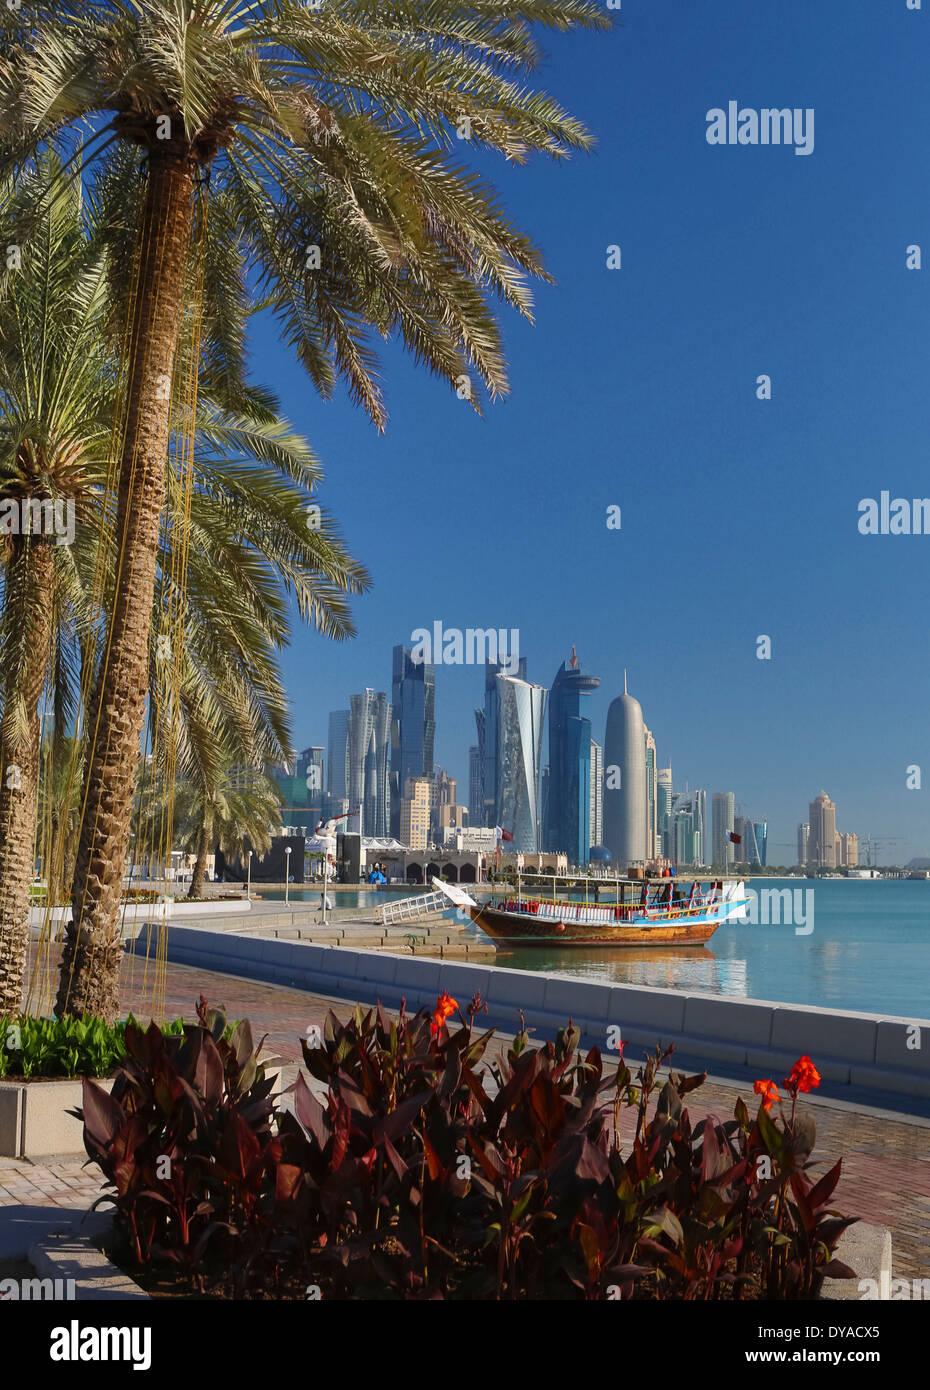 Al Bidda Burj Doha in Qatar Medio Oriente World Trade Center architettura barca bay city colorato corniche avveniristico Palm tree p Foto Stock